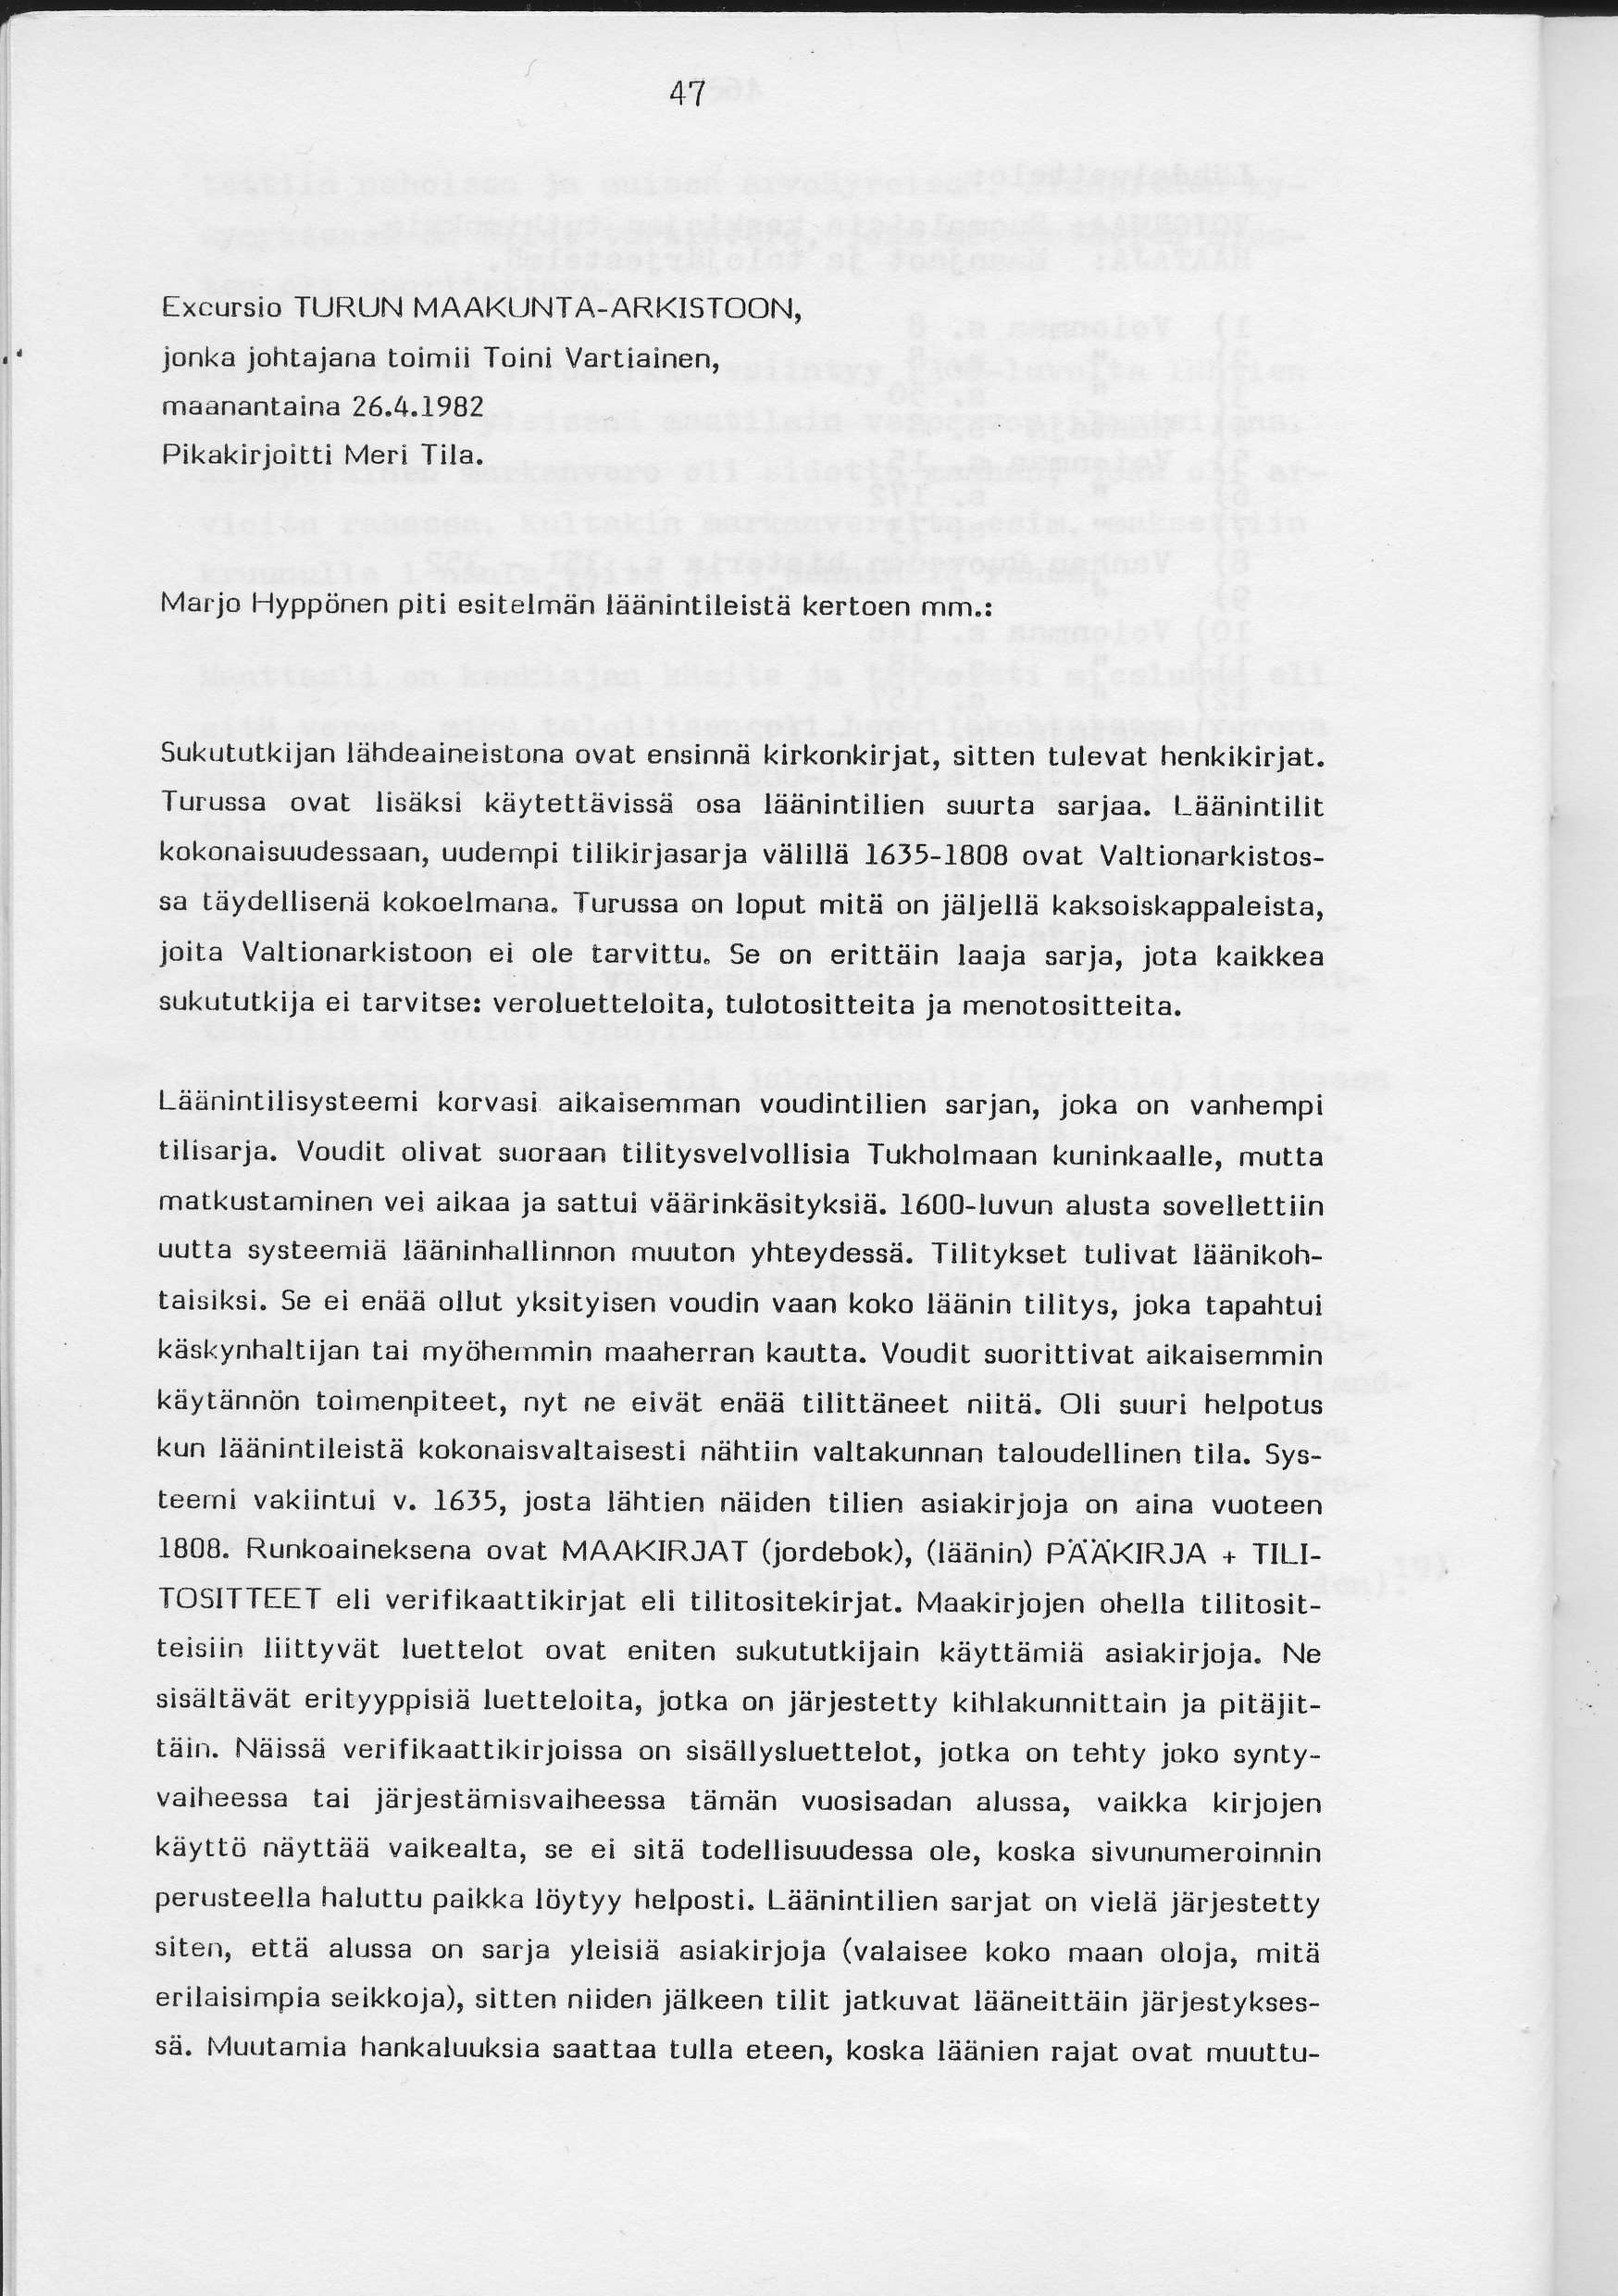 Excursio TURUN MAAKUNTA-ARKISTOON, jonka johtajana toimii Toini Vartiainen, maanantaina 26.4.1982 Pikakirjoitti Meri Tila.